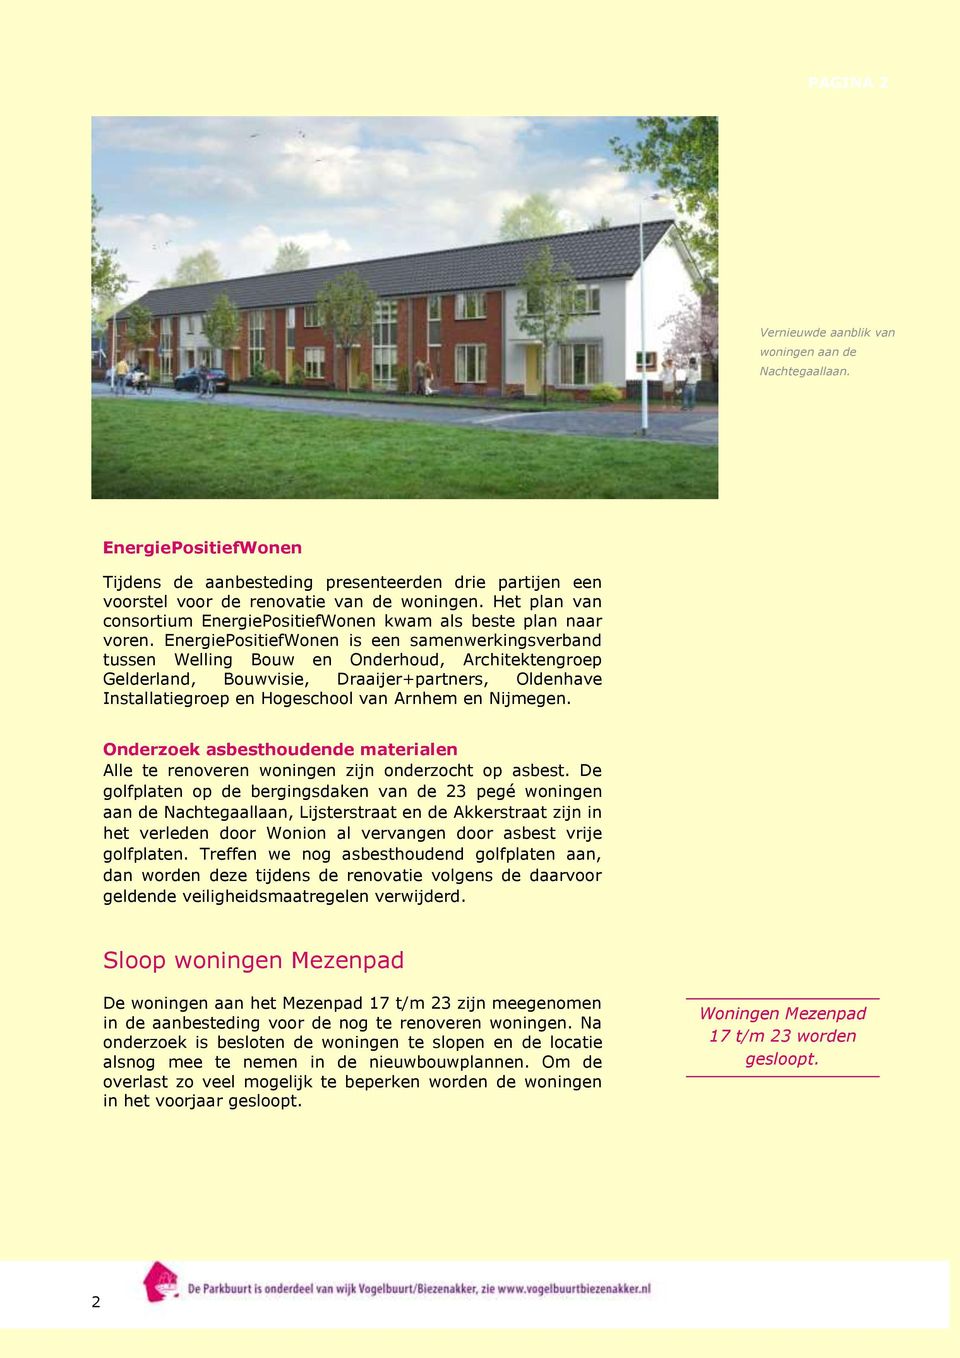 EnergiePositiefWonen is een samenwerkingsverband tussen Welling Bouw en Onderhoud, Architektengroep Gelderland, Bouwvisie, Draaijer+partners, Oldenhave Installatiegroep en Hogeschool van Arnhem en